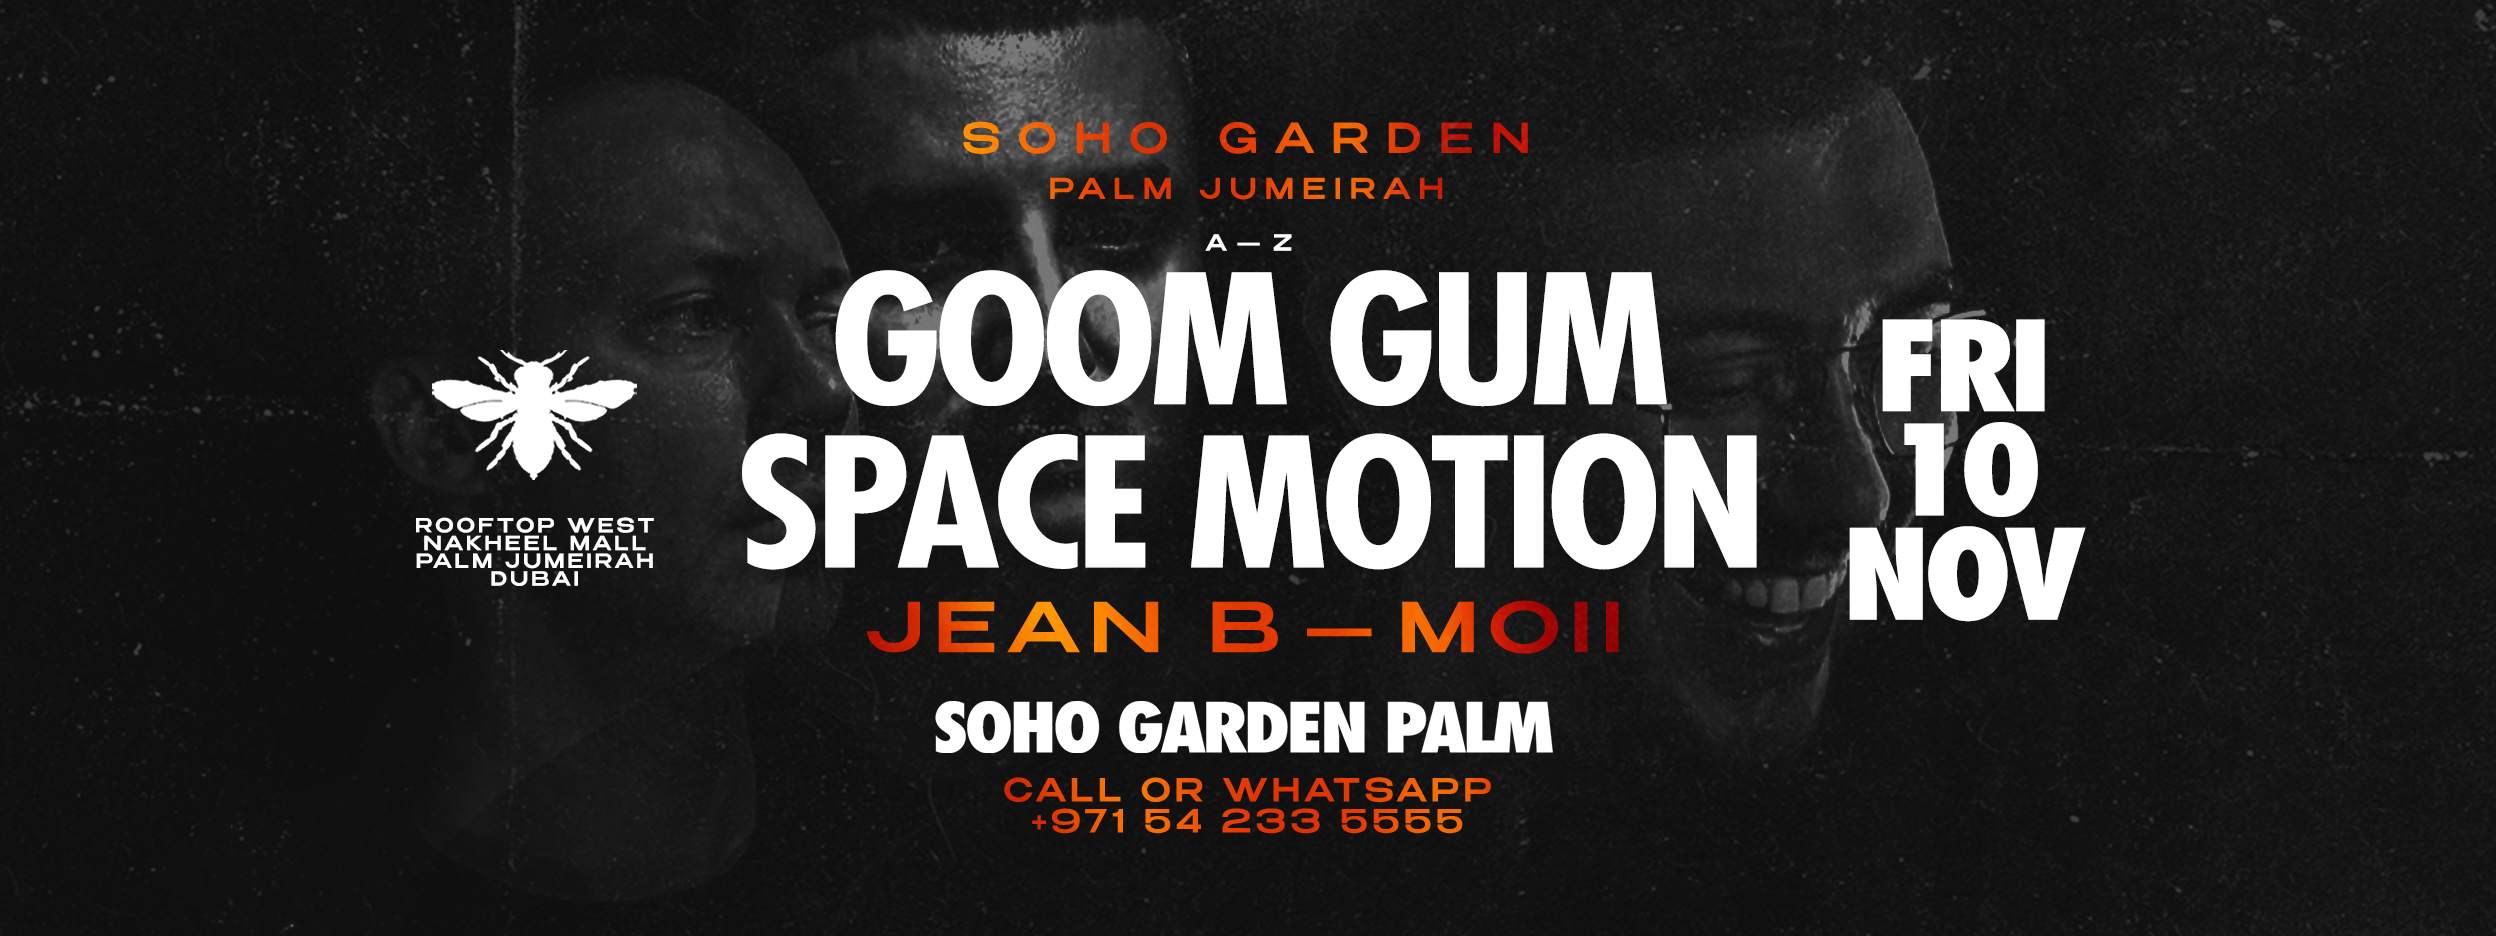 Goom Gum - Space Motion - フライヤー表